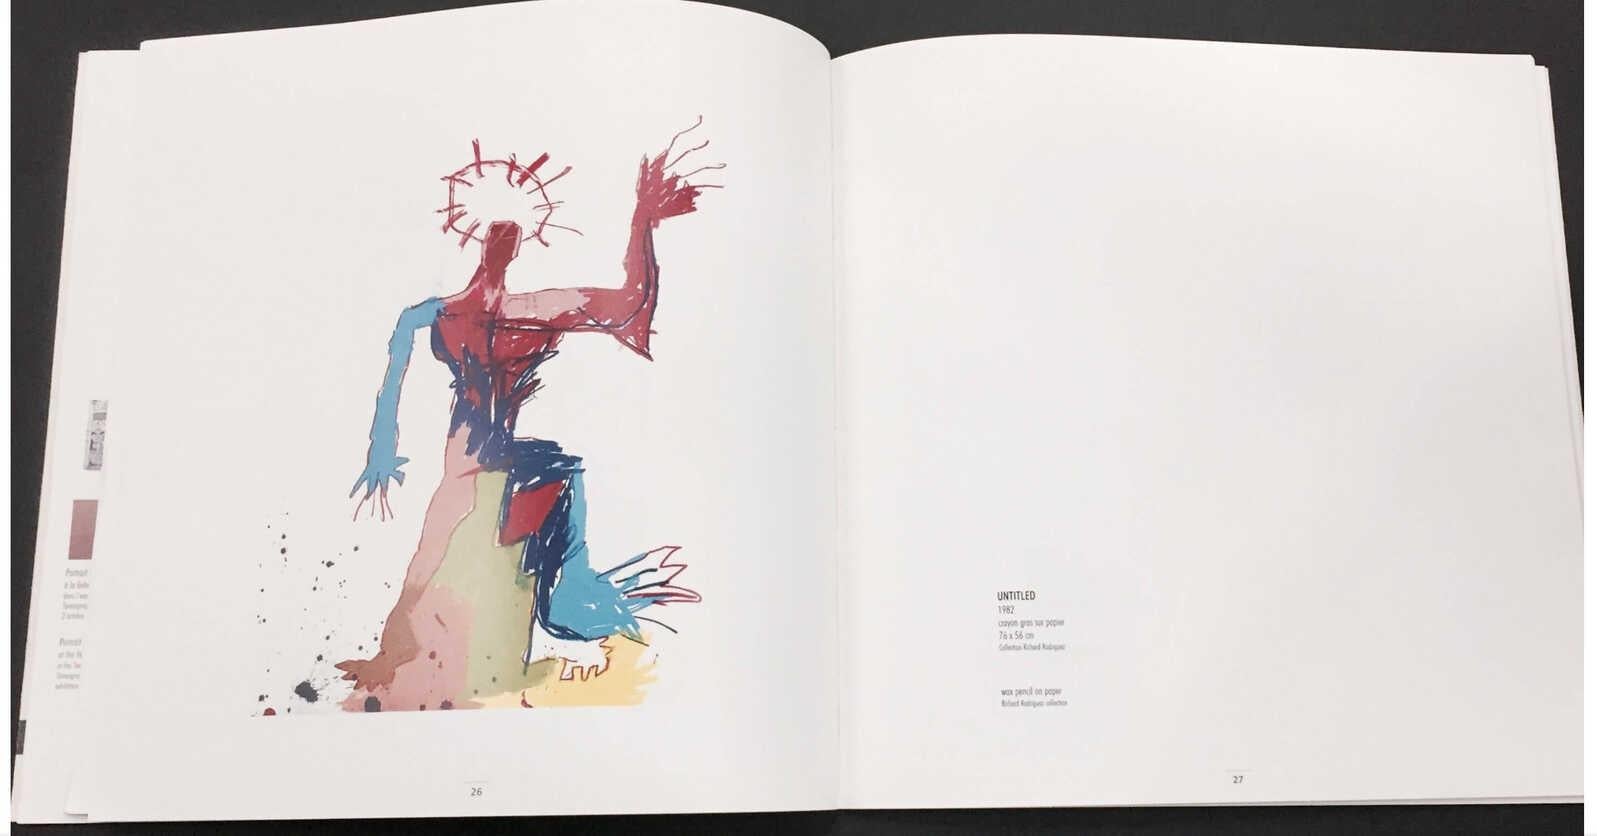 Rare catalogue d'exposition Basquiat des années 1990 publié à l'occasion de :
Basquiat The Transcendental Voyage, at L'Espal;' Le Mans, France, 1999.

Quatrième et première de couverture : photos de Basquiat par Keith Haring et l'ami de Basquiat,